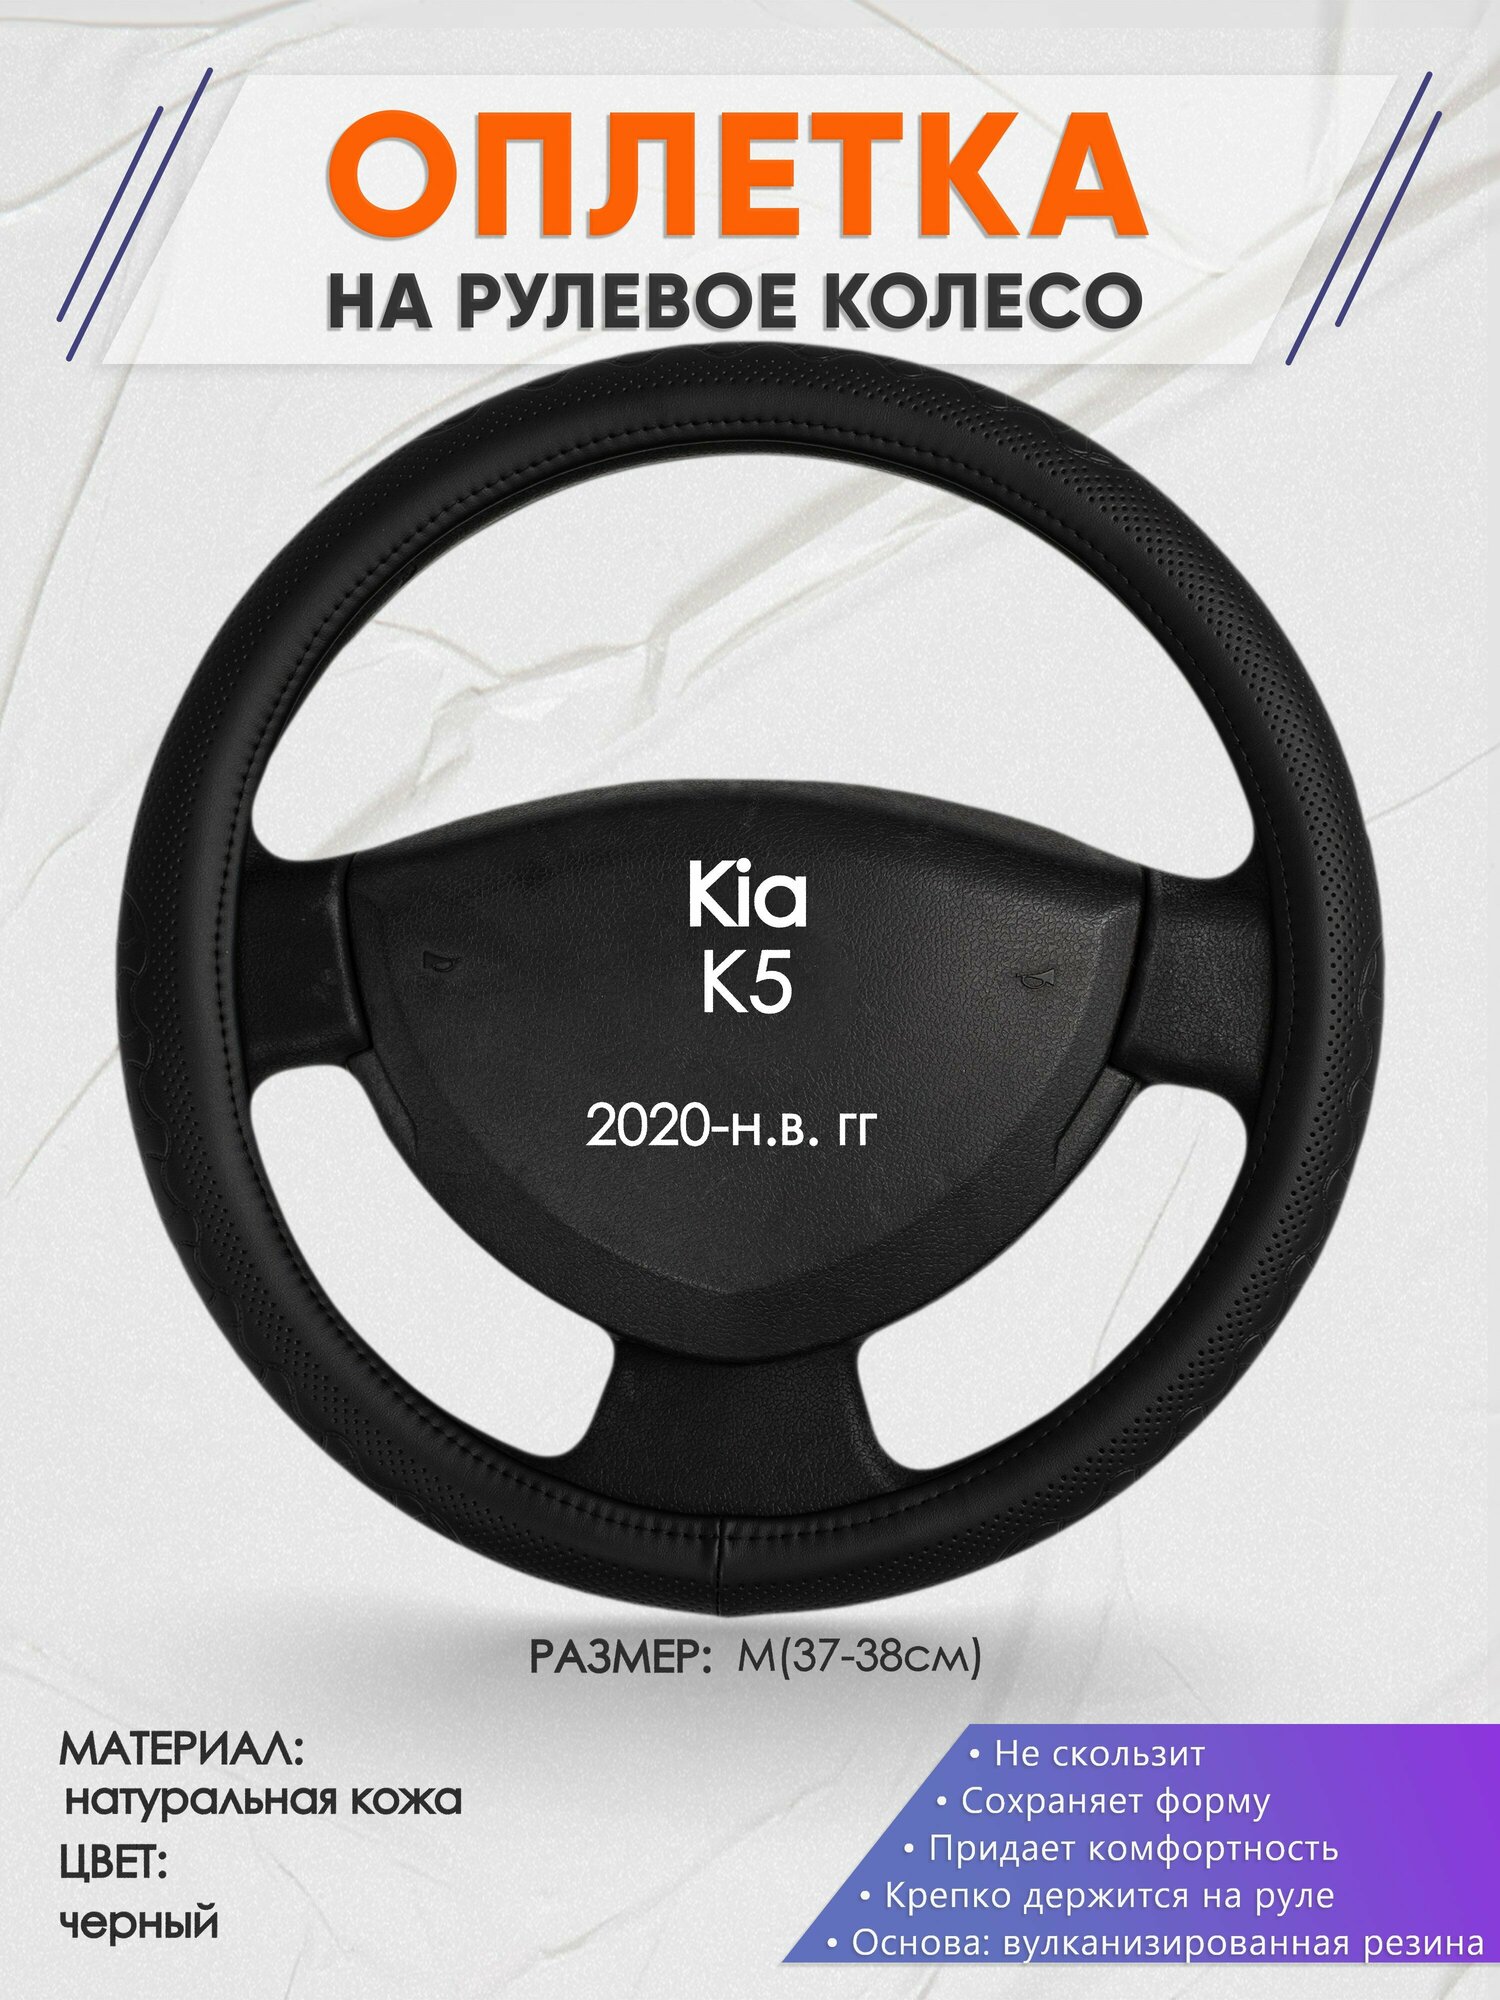 Оплетка на руль для Kia K5 (Киа К5) 2020-н. в M(37-38см) Натуральная кожа 91